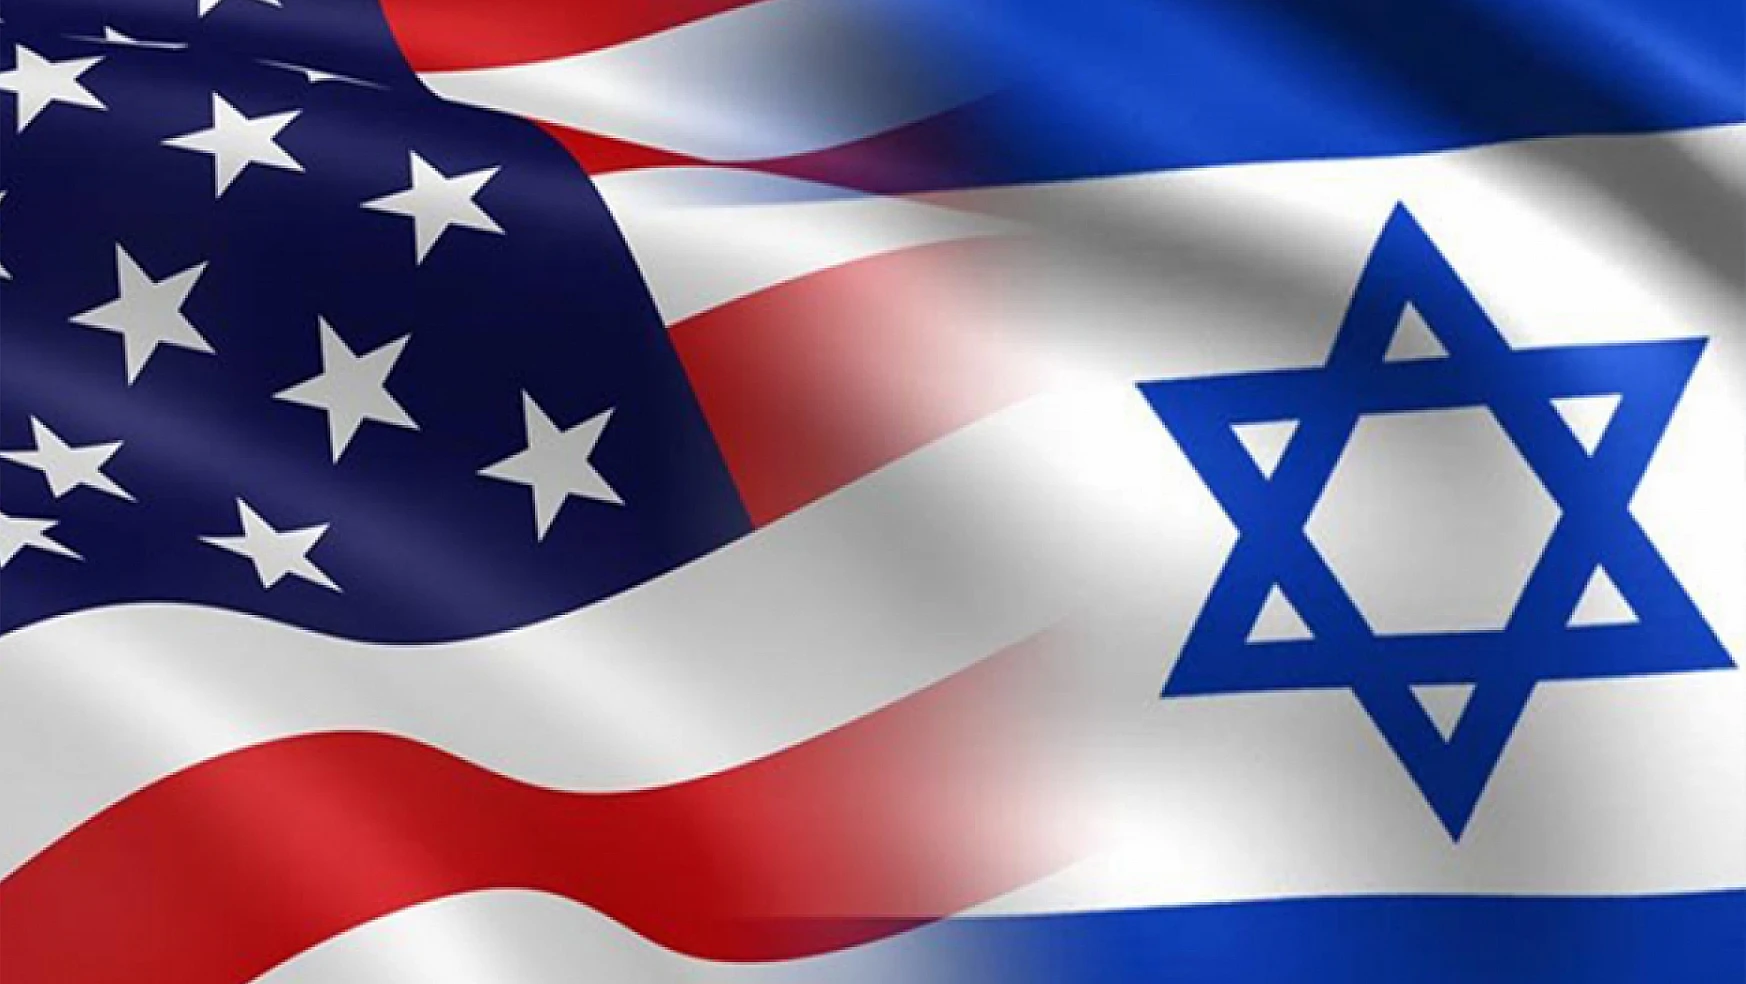 ABD hükümetinden İsrail'e çağrı